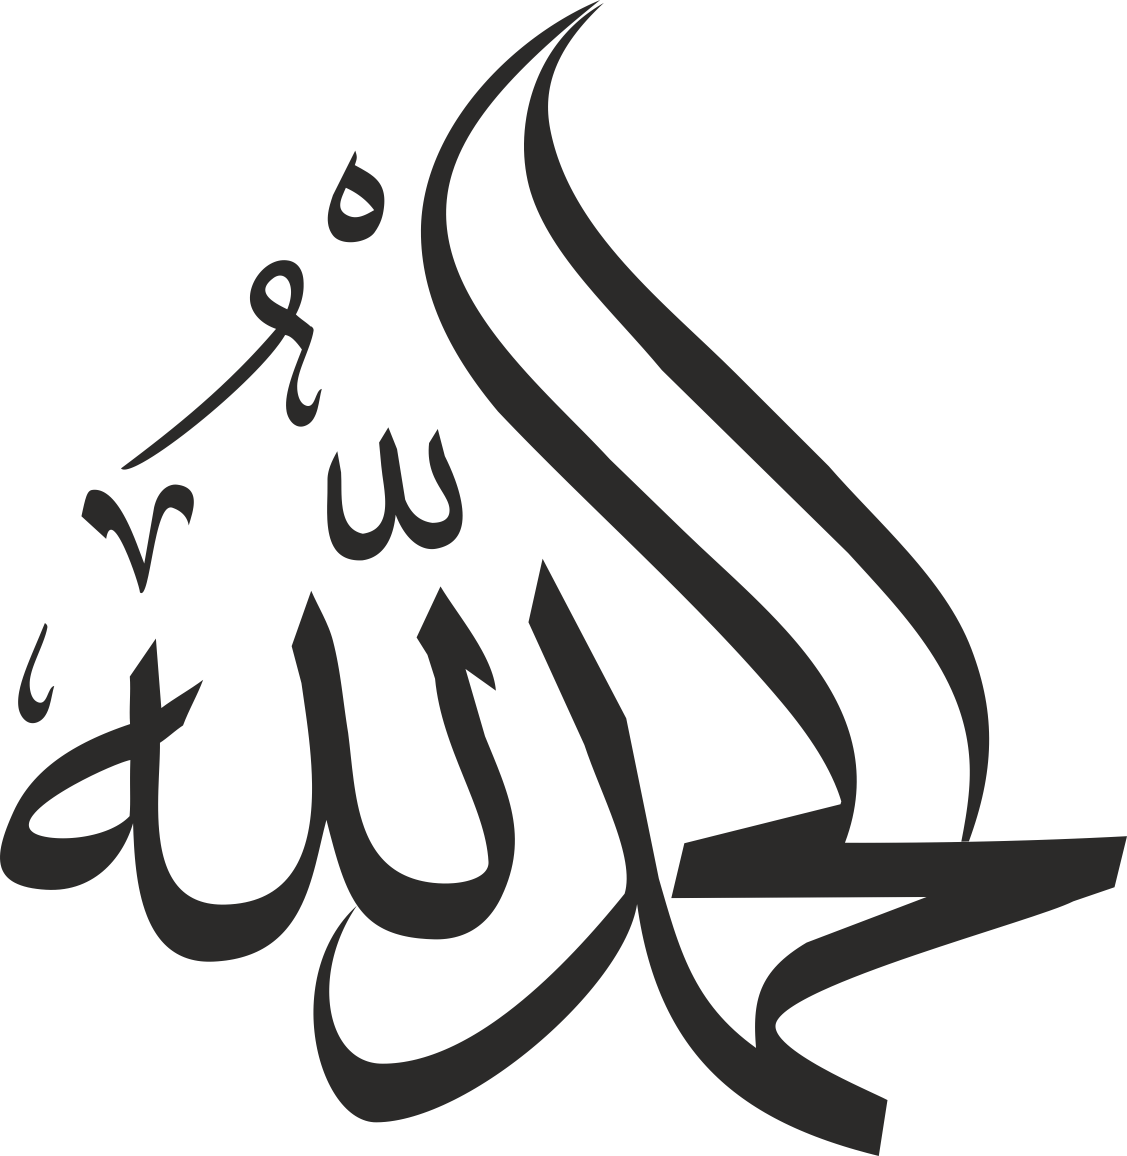 Wandtattoo Islamische Kalligraphie Alhamdulillah (Hamdala)